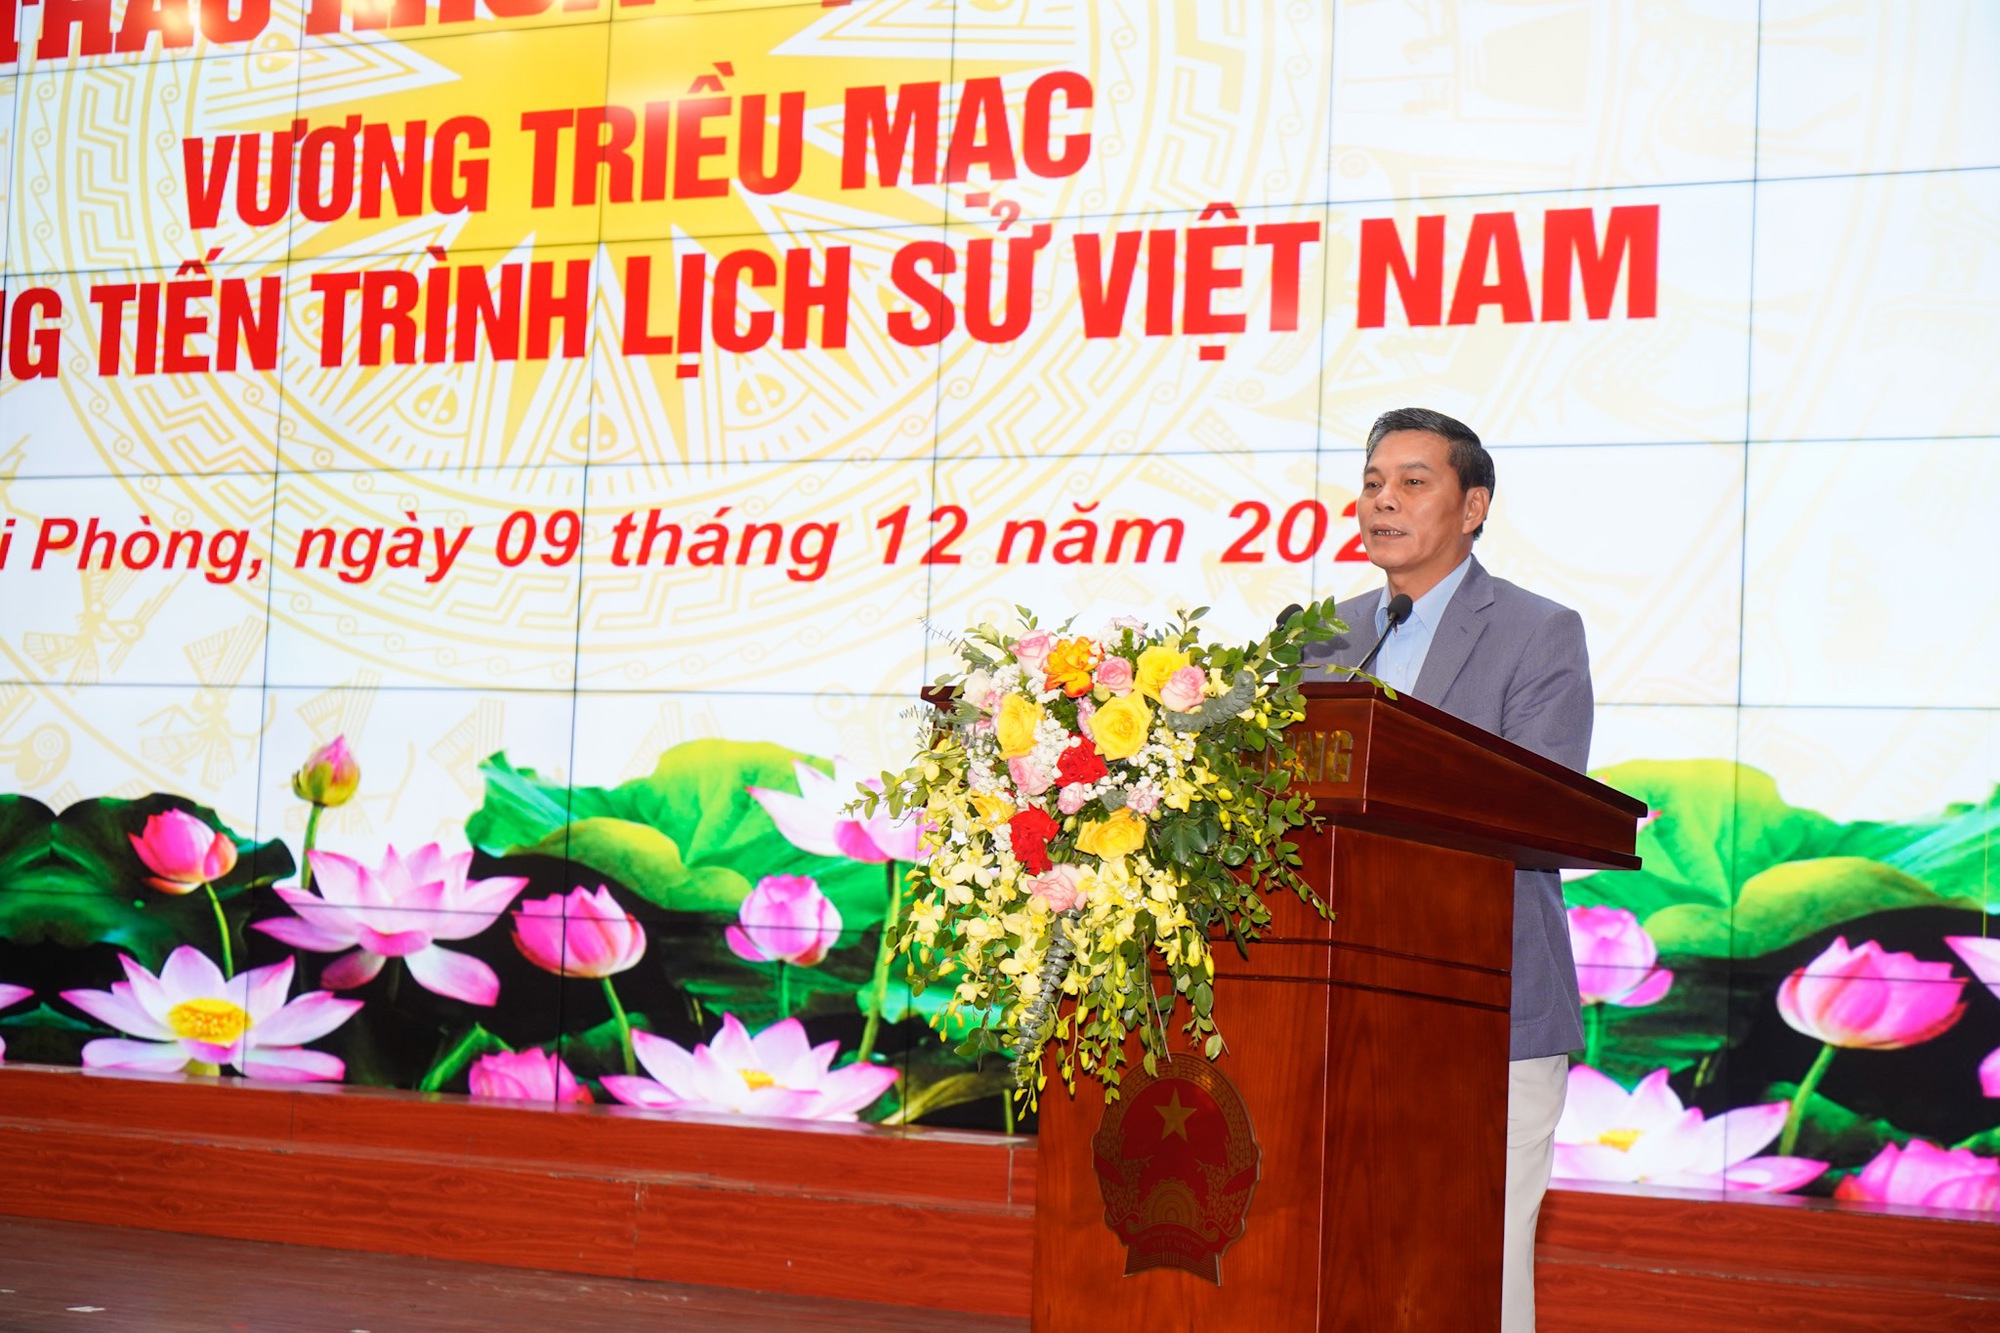 Vai trò lịch sử của Vương triều nhà Mạc trong tiến trình lịch sử Việt Nam  - Ảnh 3.